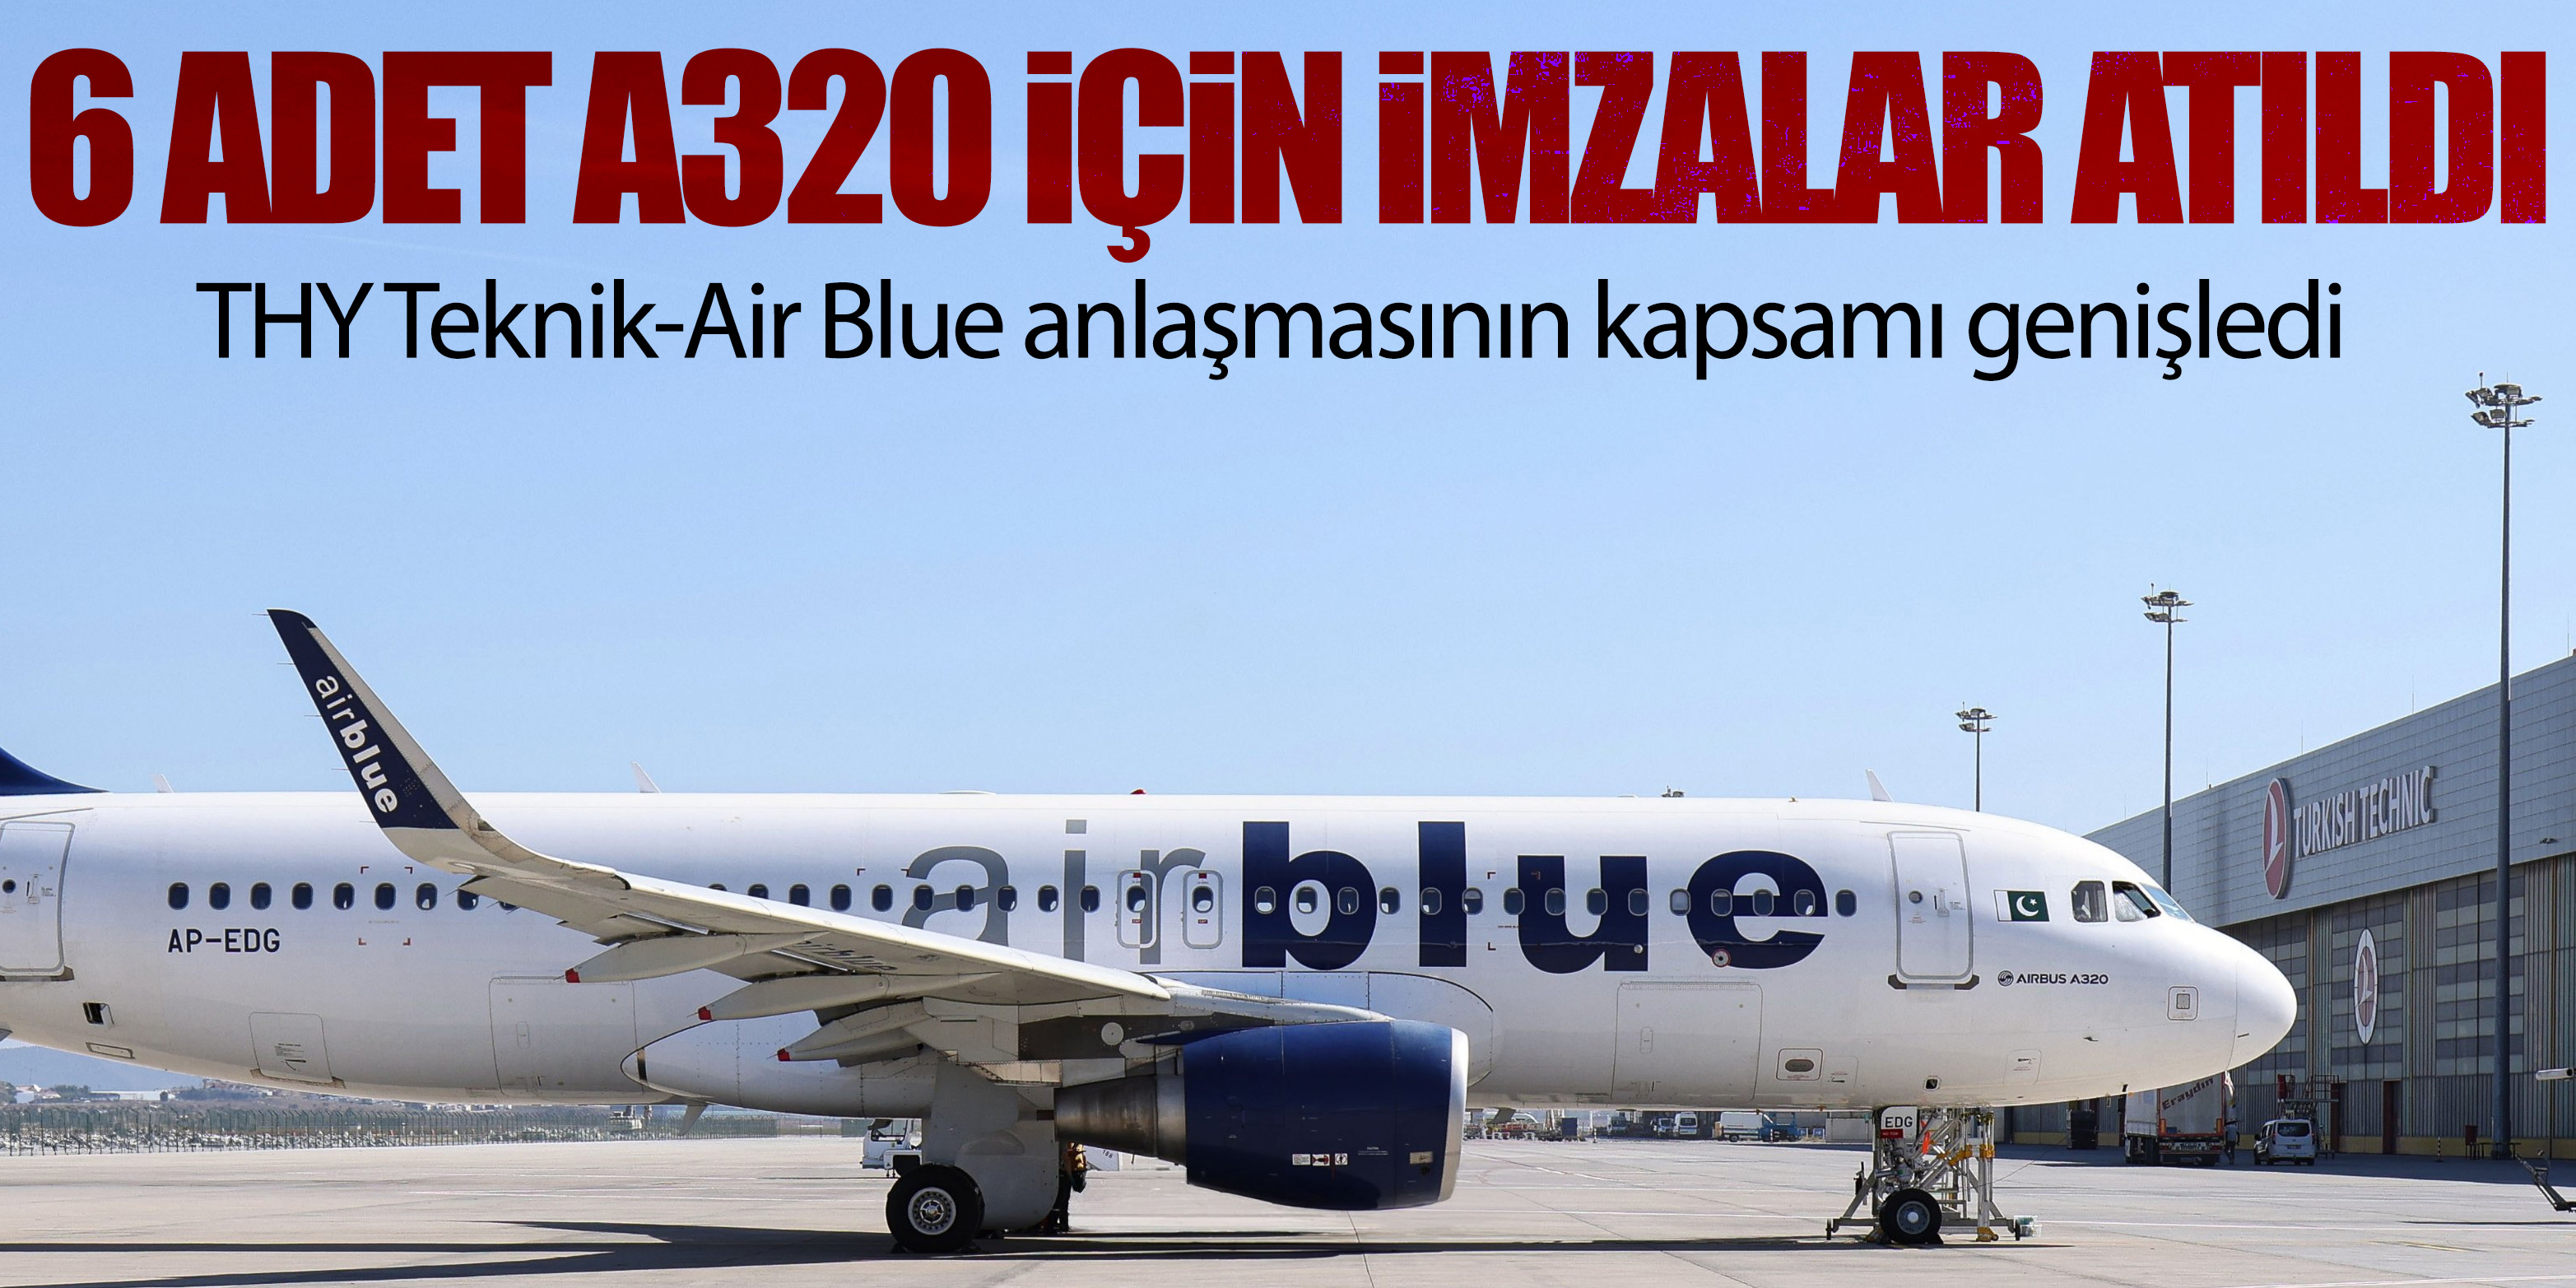 THY Teknik-Air Blue anlaşmasının kapsamı genişledi